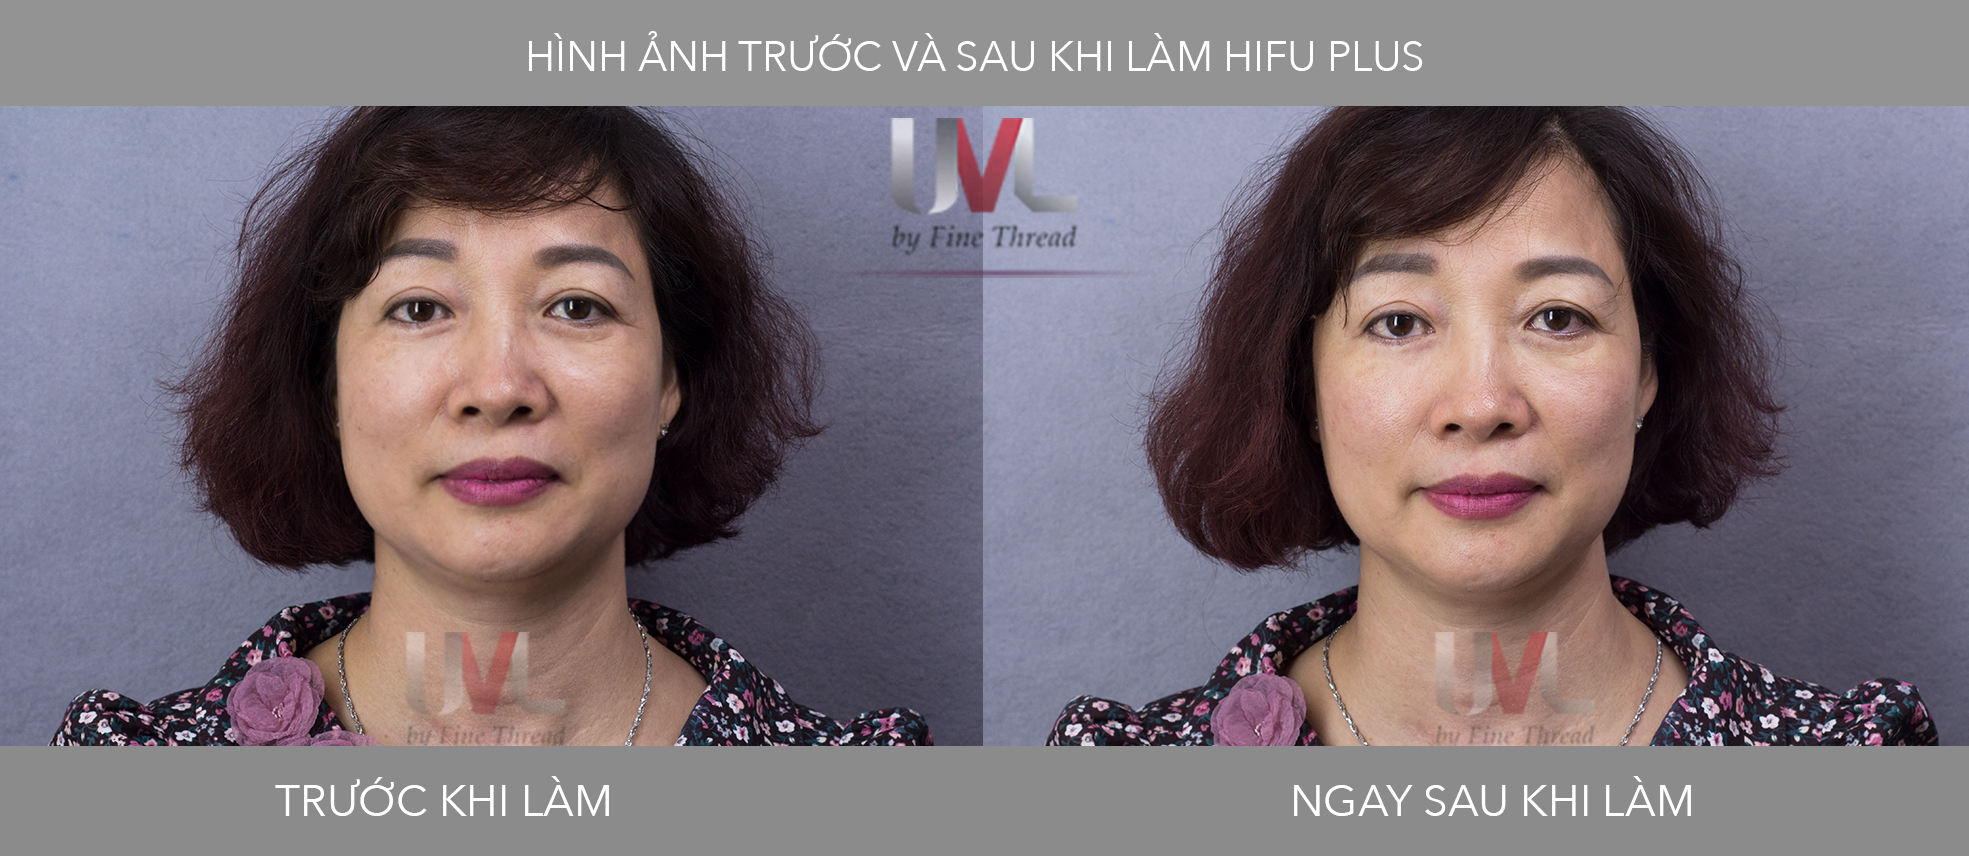 Hình ảnh khách hàng trước và sau khi làm hifu plus